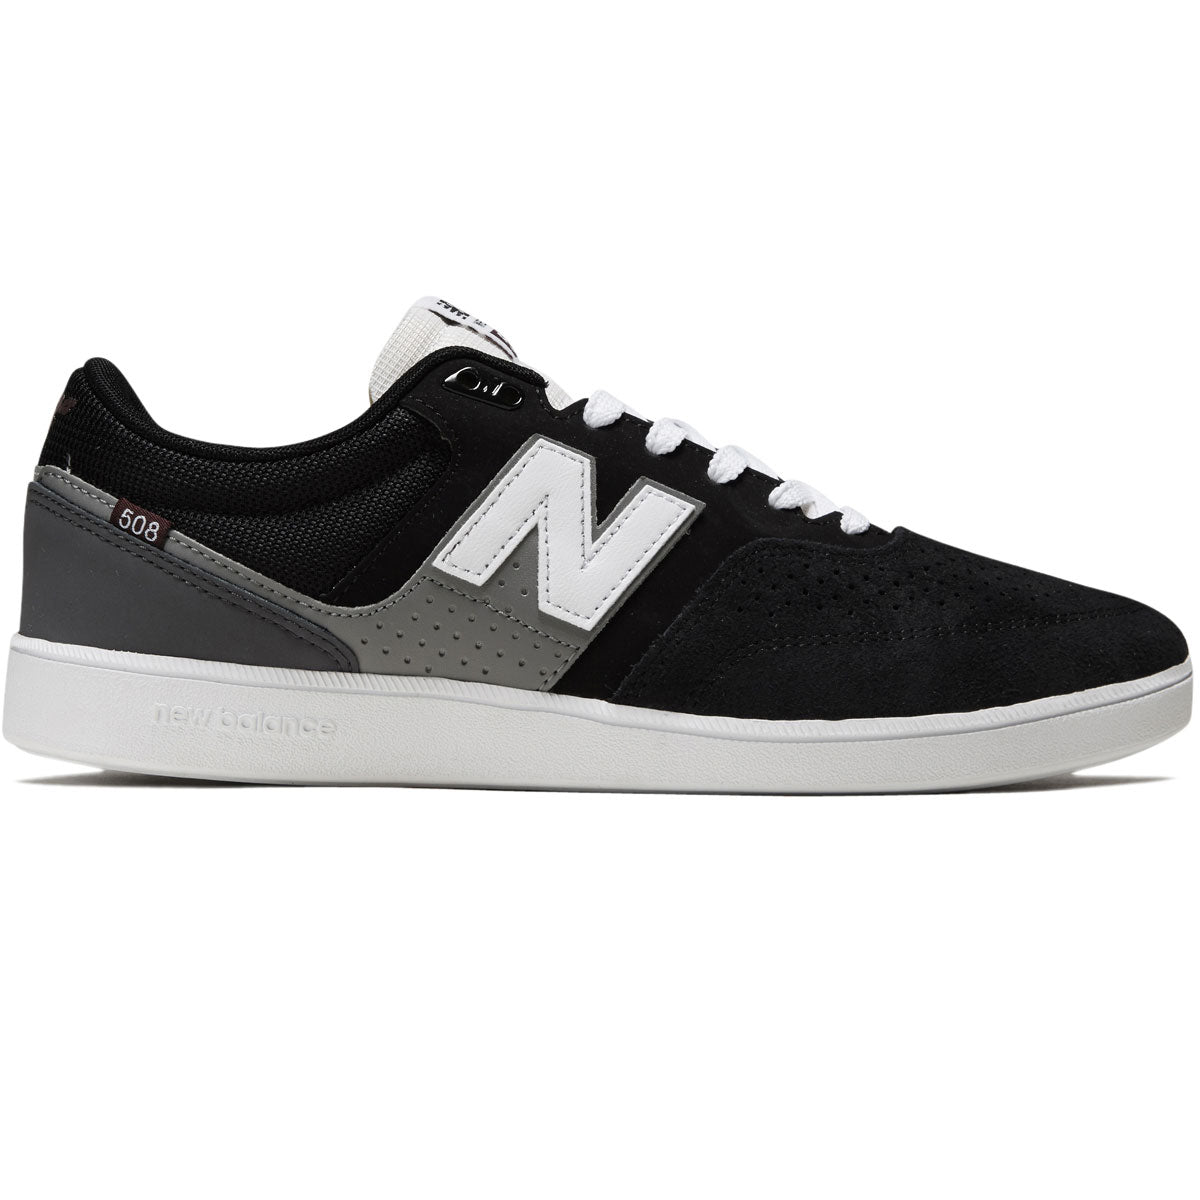 New Balance 508 Westgate Shoes - Black image 1